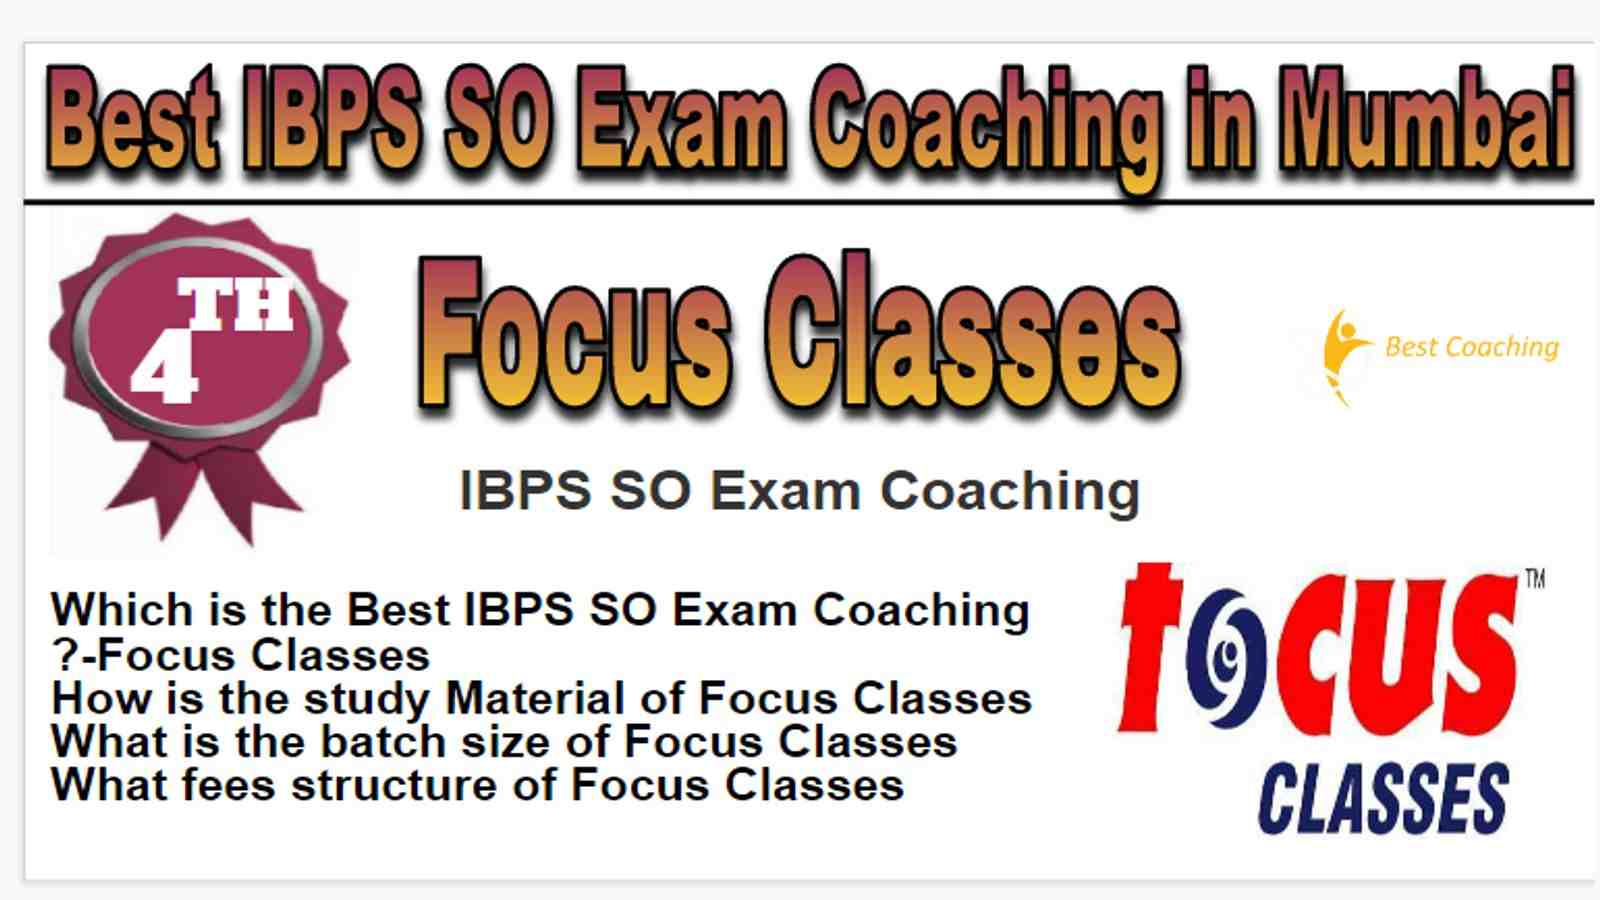 Rank 4 Best IBPS SO Exam Coaching in Mumbai